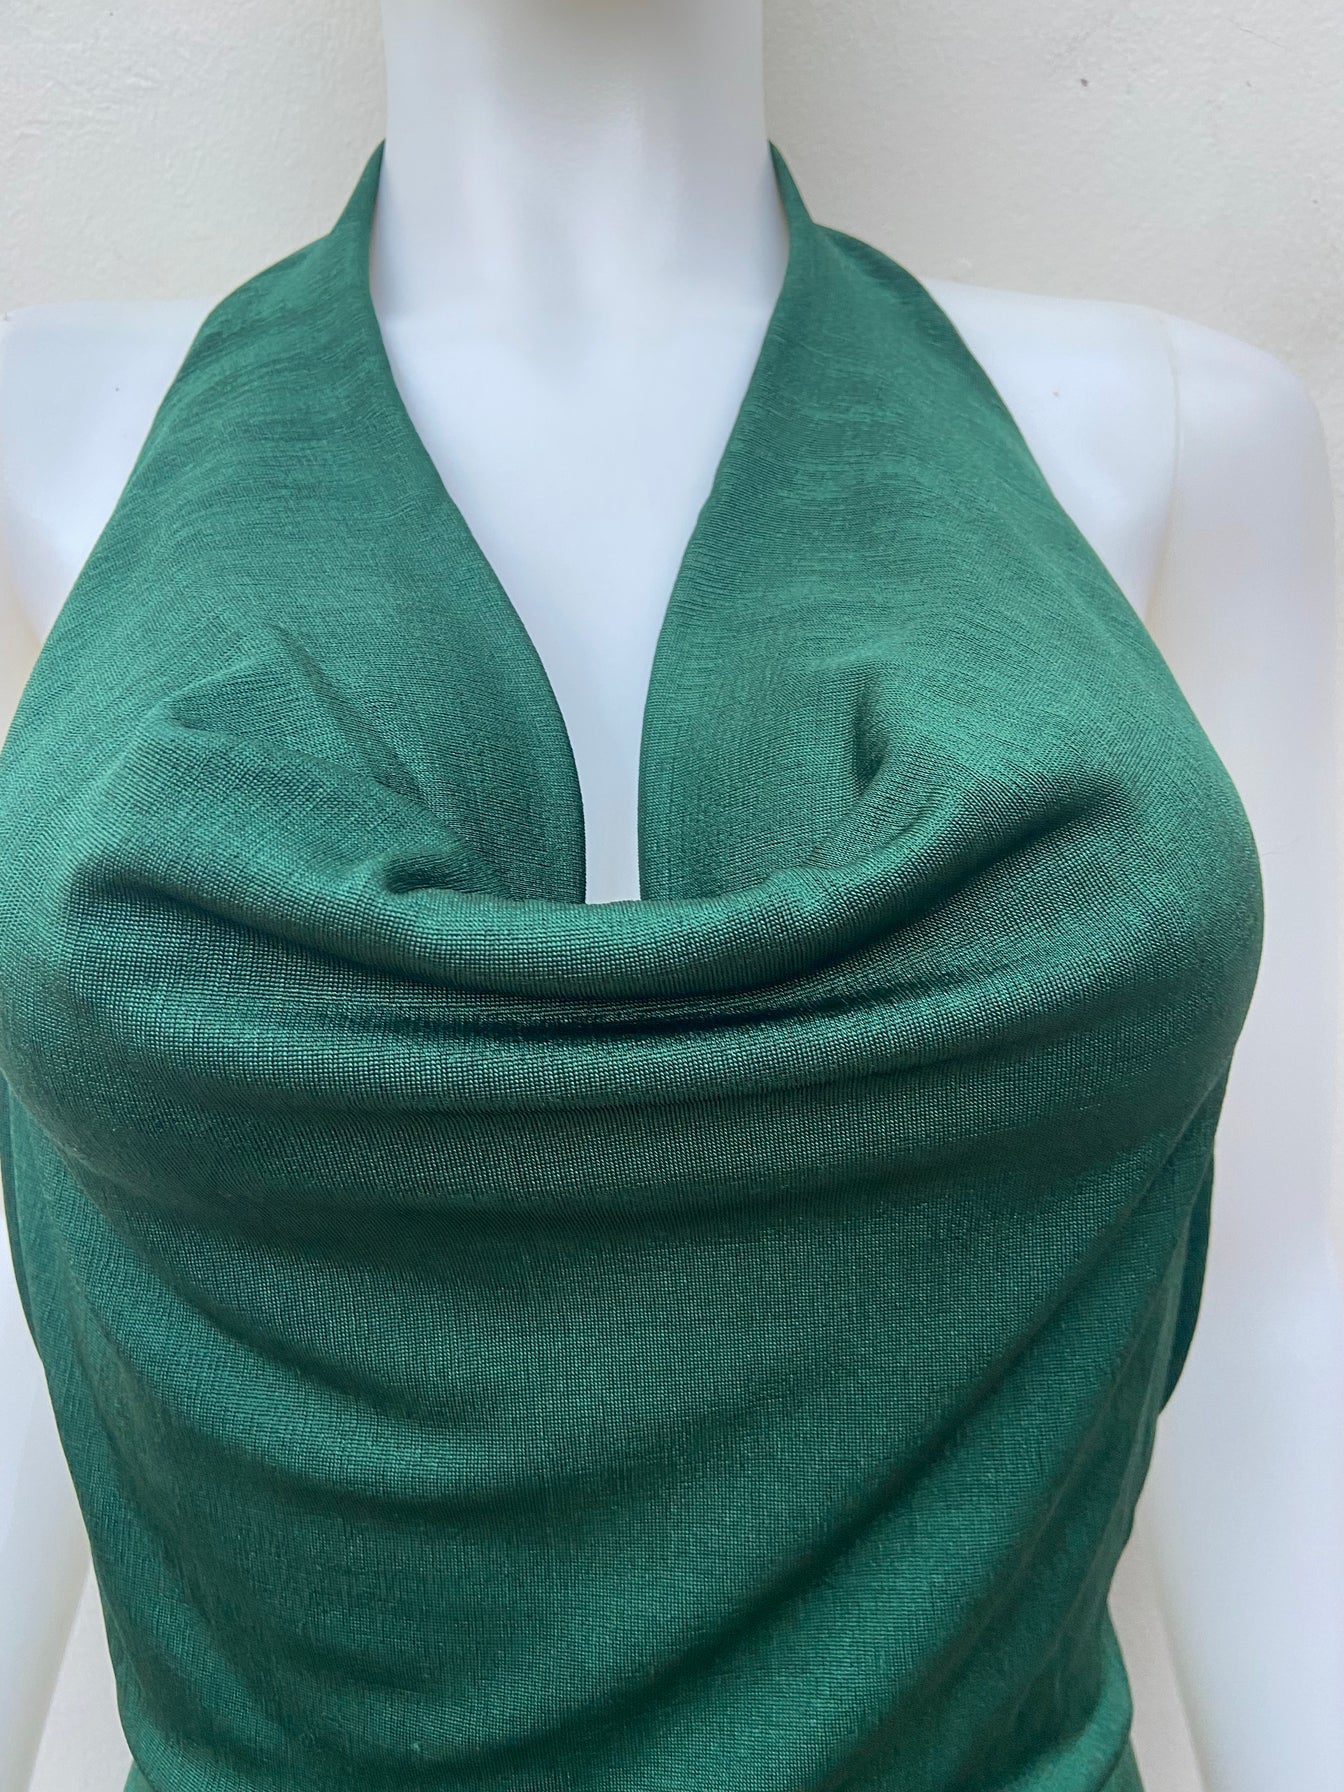 Vestido Fashion Nova original de color hunter ( verde ) de tela brillante espalda descubierta